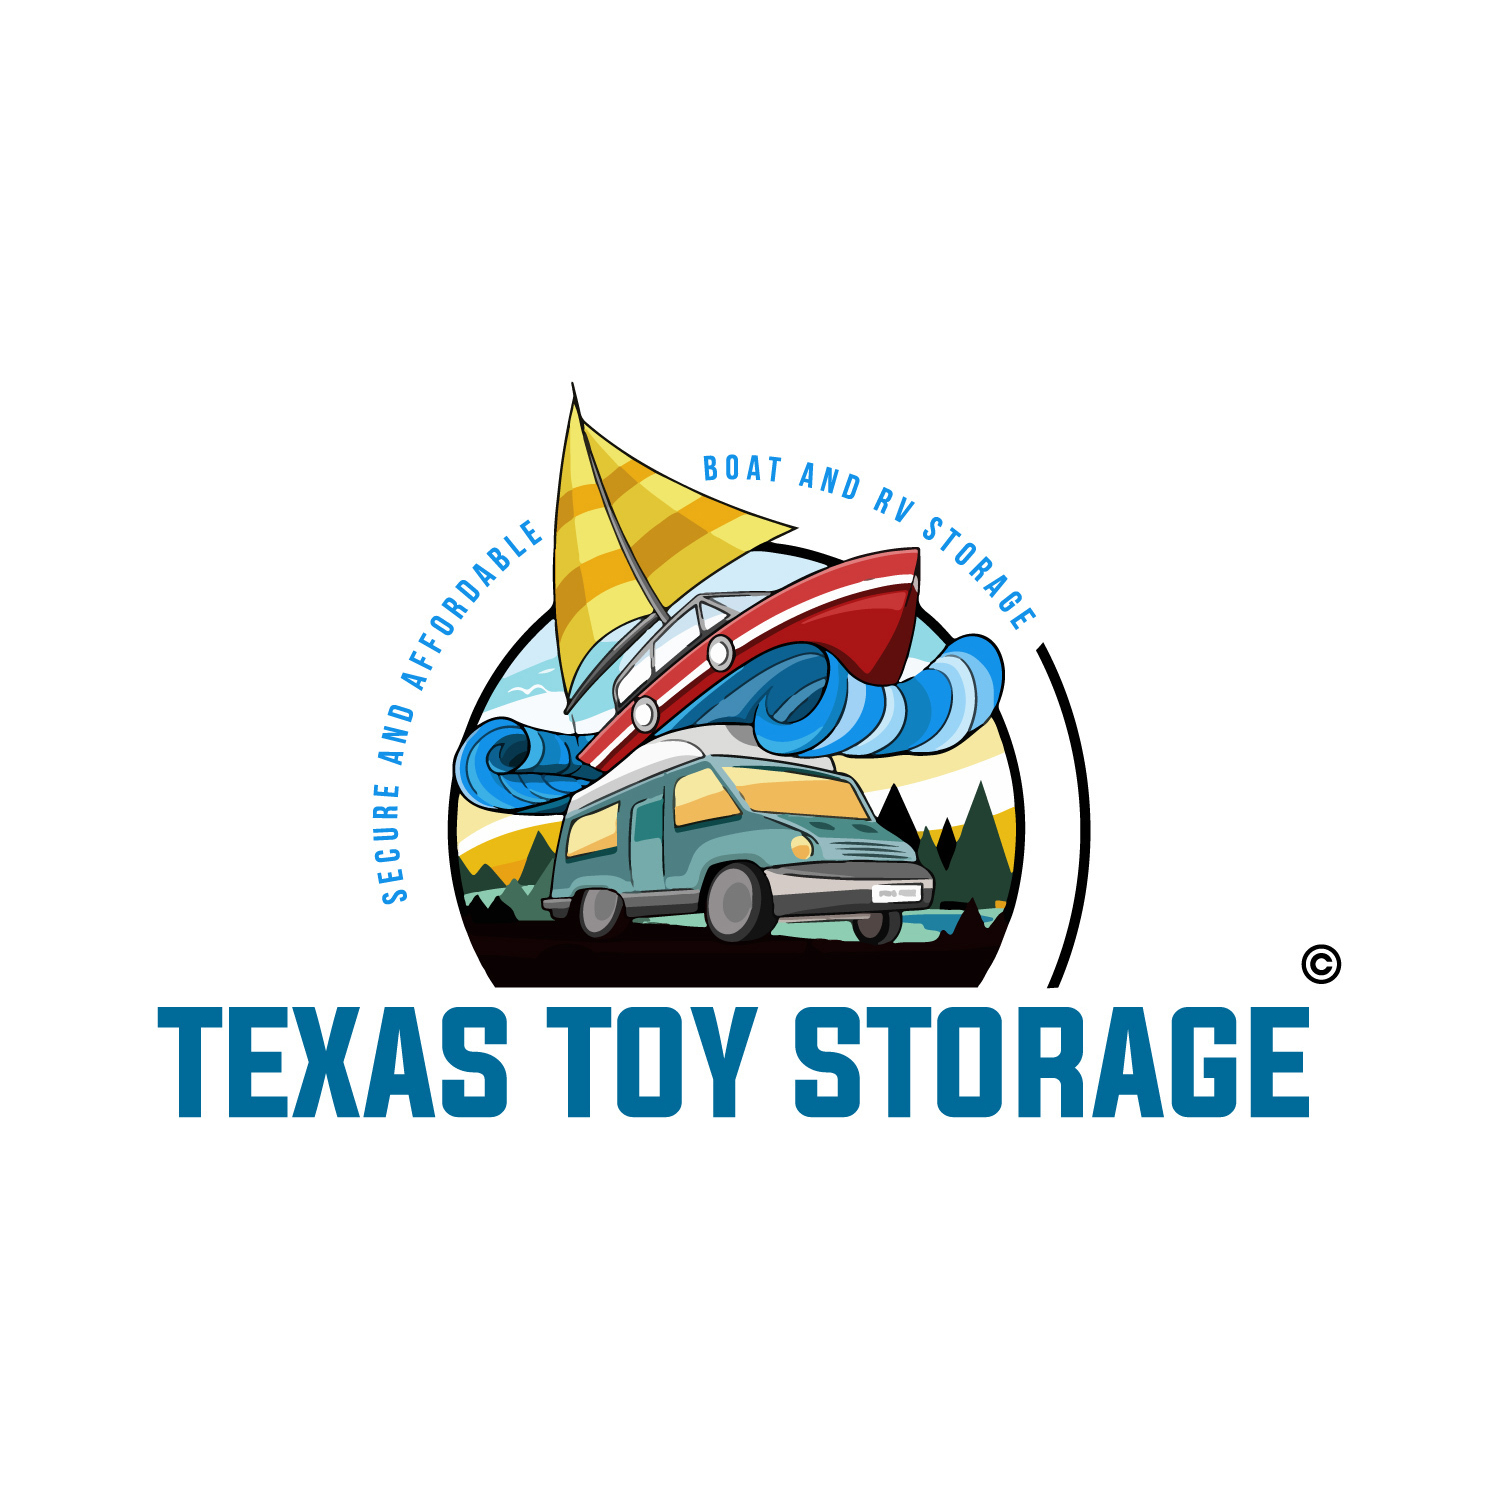 Texas Toy Storage